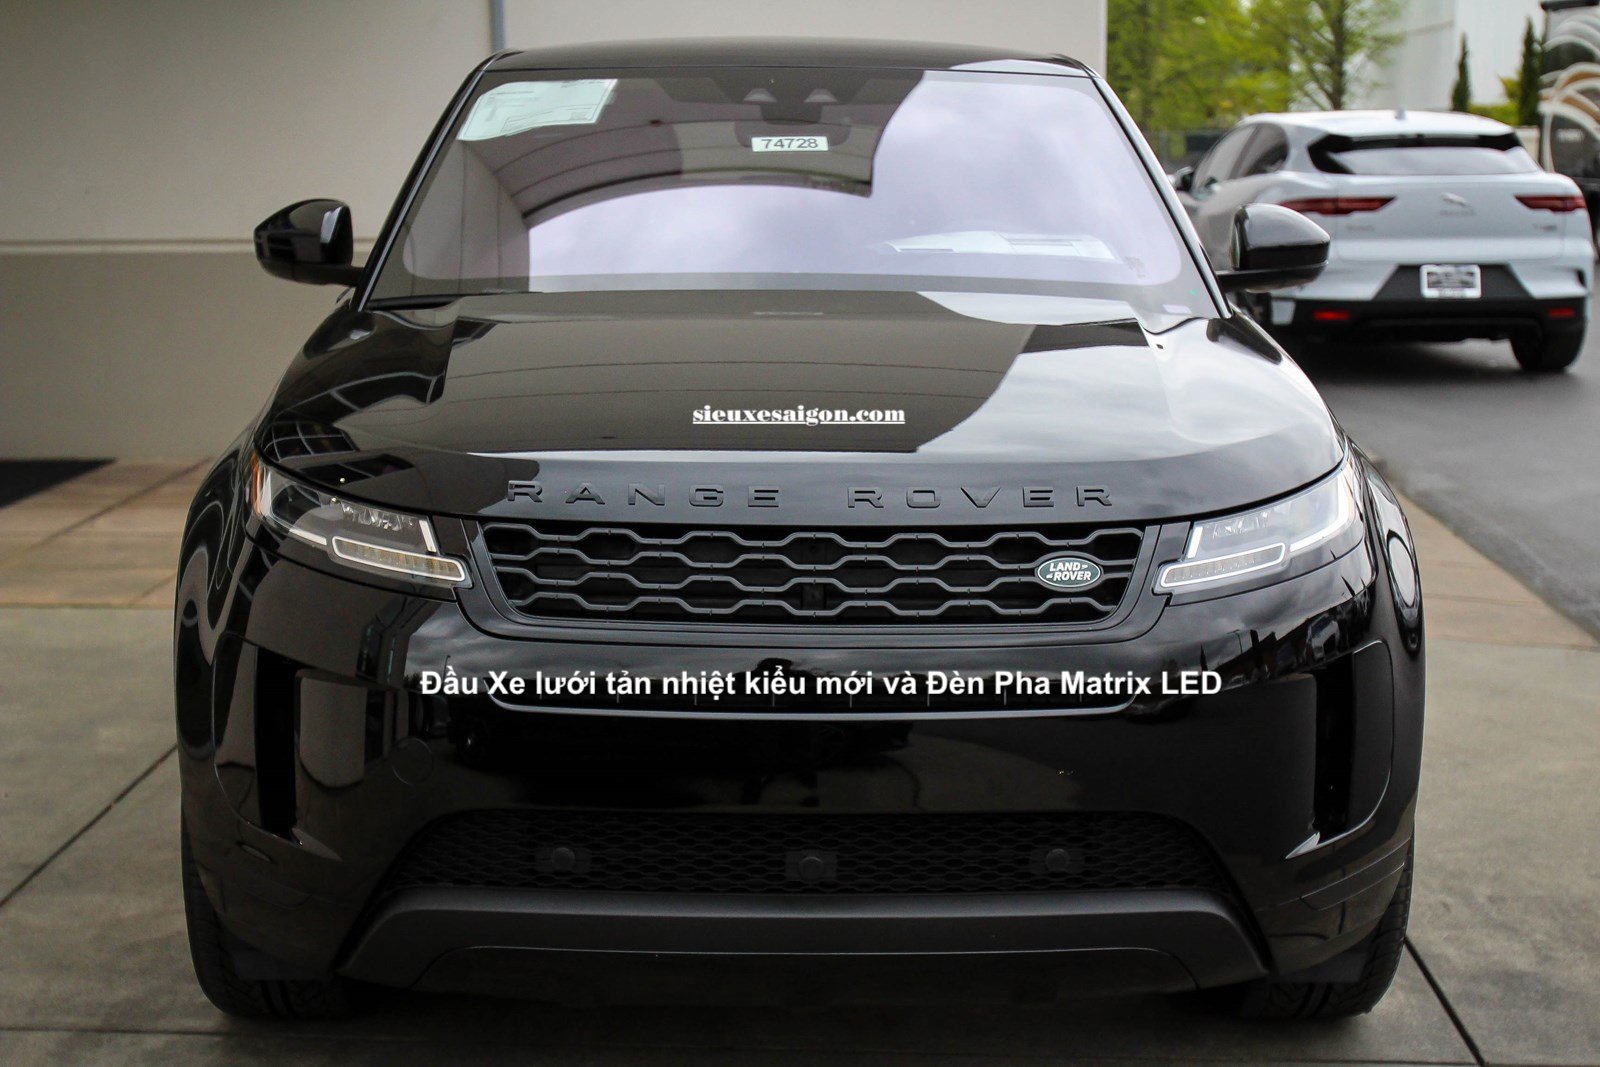 Giá Khởi điểm cho mẫu Range Rover Evoque 5 Chỗ Hoàn Toàn Mới Model Year 2020 là 3.799 Triệu Đồng. Gồm 4 Phiên bản: R-Dynamic S, Evoque R-Dynamic SE, R-Dynamic SE da Winsor, Evoque First Edition. Khác nhau bản tiêu chuẩn là 2 thanh màu đồng dưới cản trước